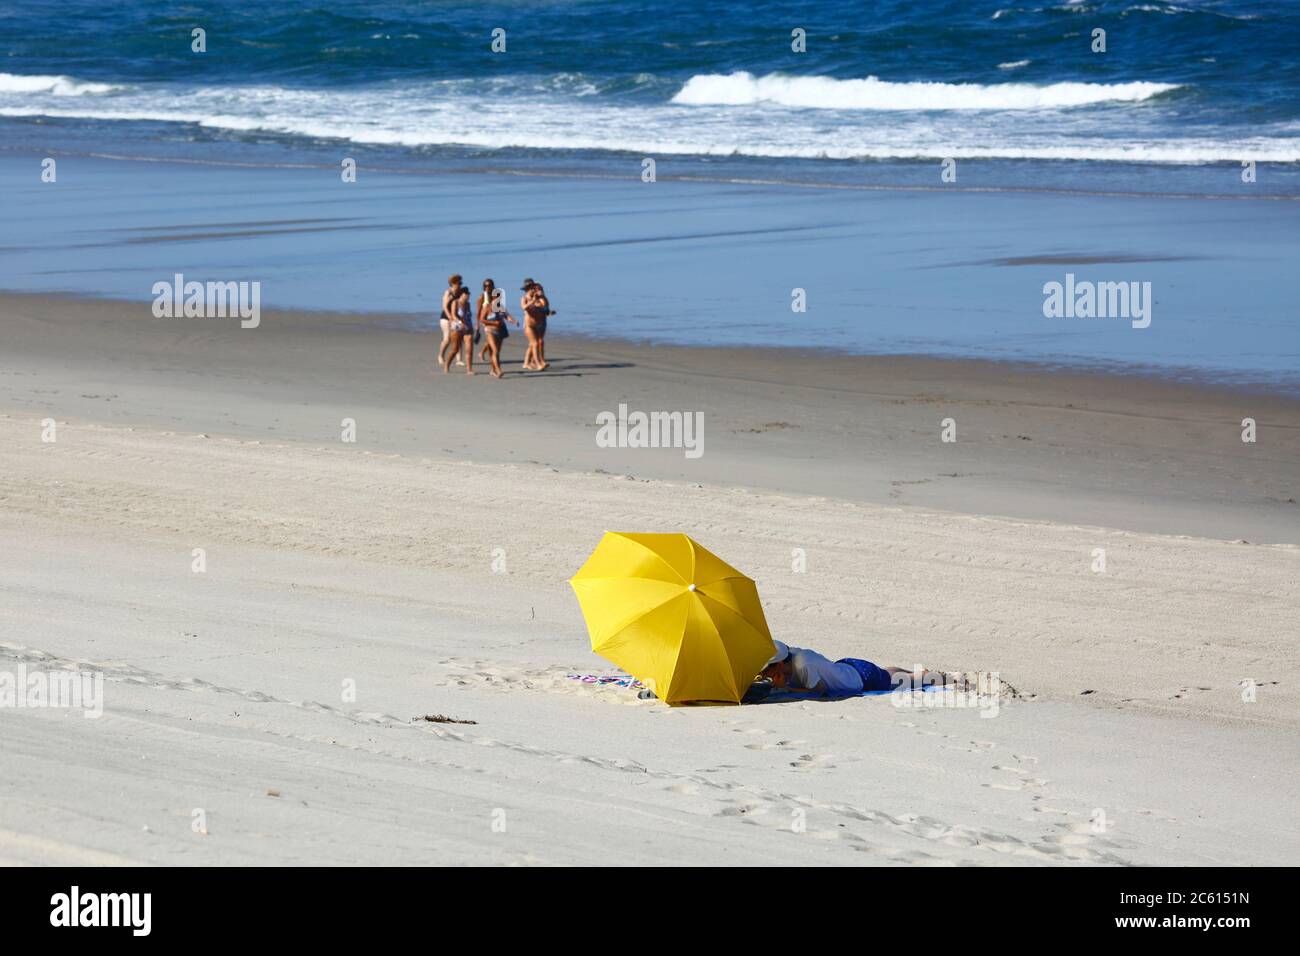 6 luglio 2020, Vila Praia de ancora, Portogallo settentrionale: Alcune persone godono di una giornata di sole su una spiaggia quasi vuota a Vila Praia de ancora. Vila Praia de ancora è una popolare località balneare e le sue spiagge sarebbero normalmente molto più affette in questo periodo dell'anno. Foto Stock